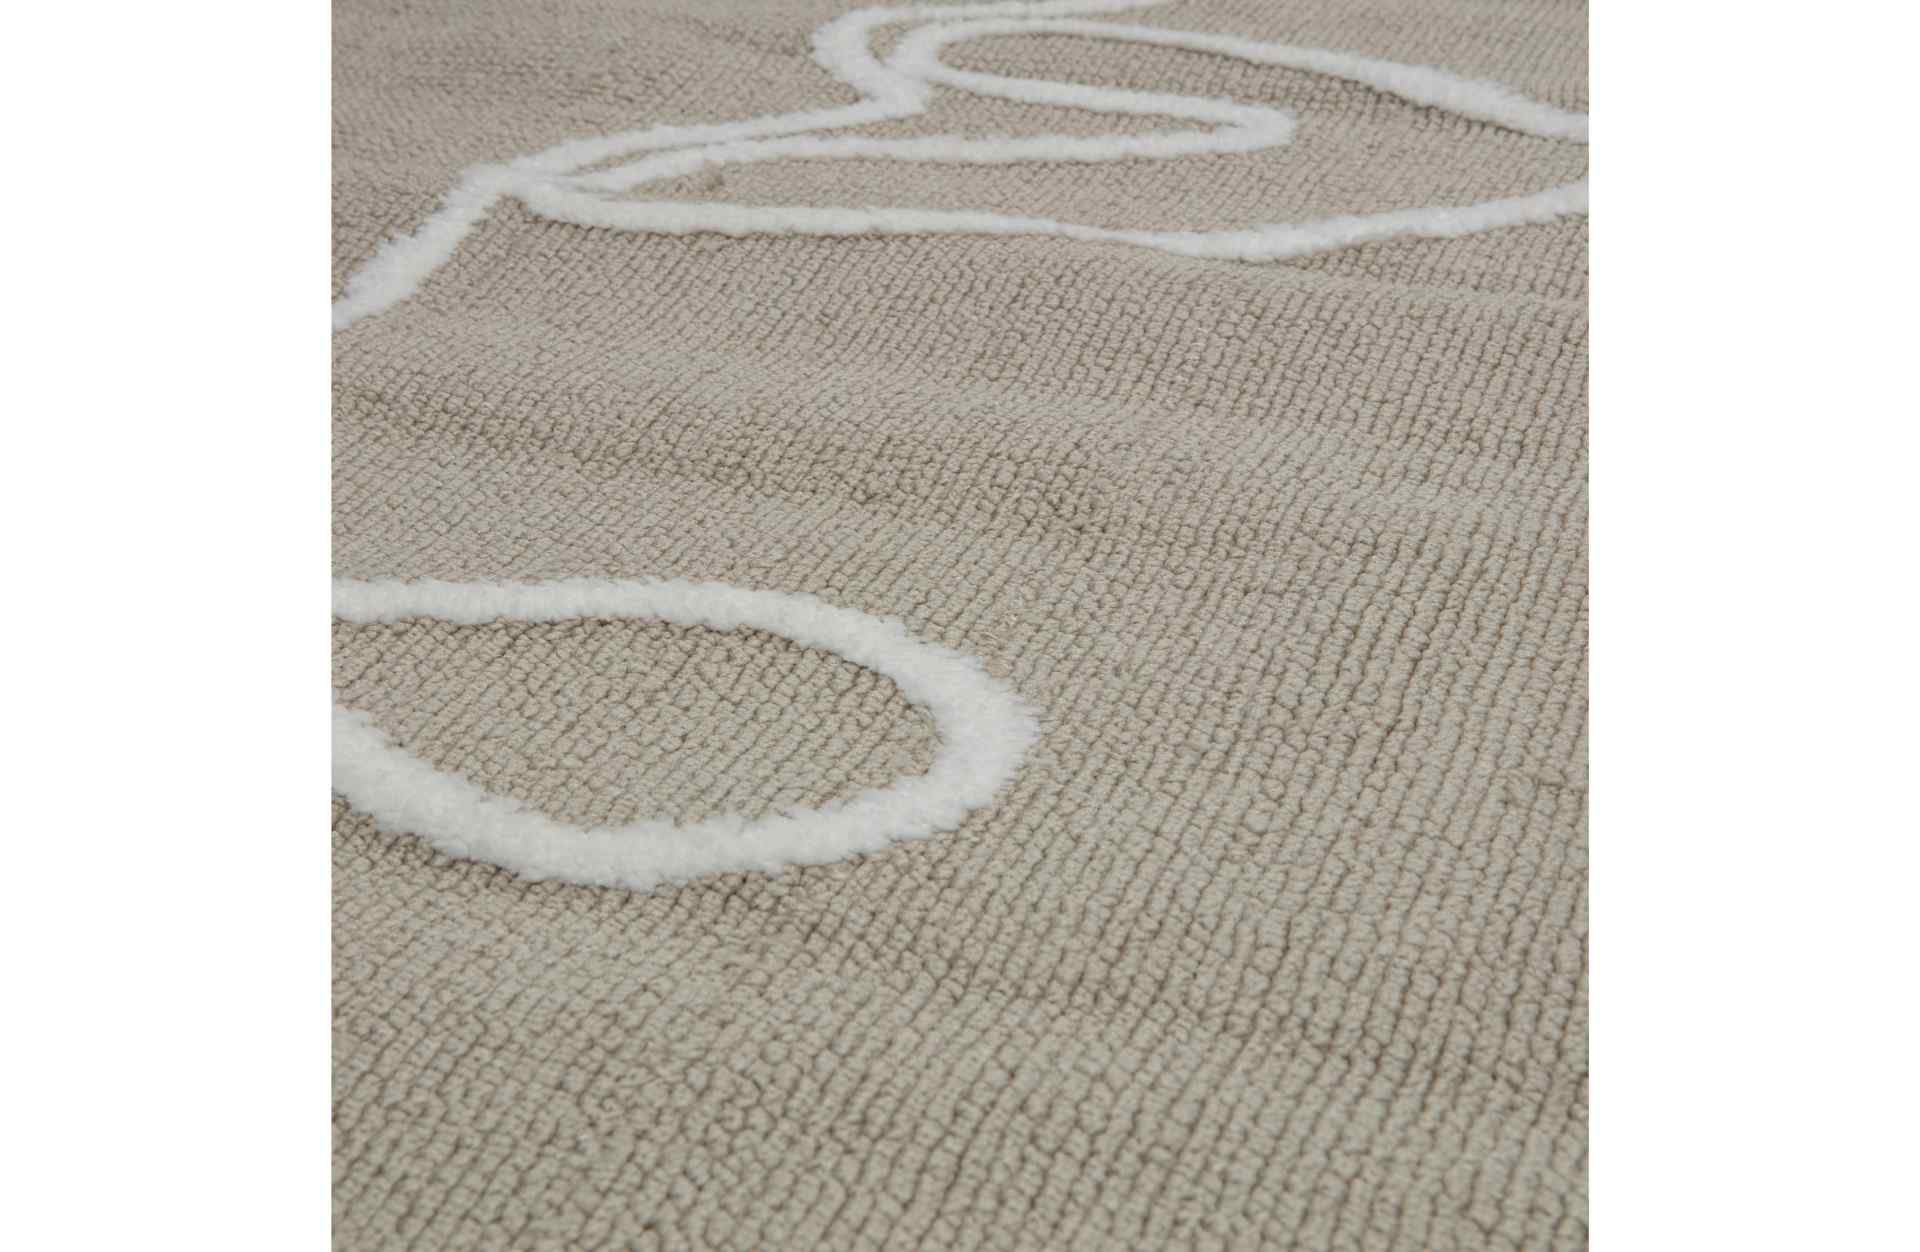 Der Wandteppiche Zeno überzeugt mit seinem modernen Design. Gefertigt wurde er aus Kunststofffasern, welche einen grauen Farbton besitzen. Der Teppich besitzt eine Größe von 160x230 cm.